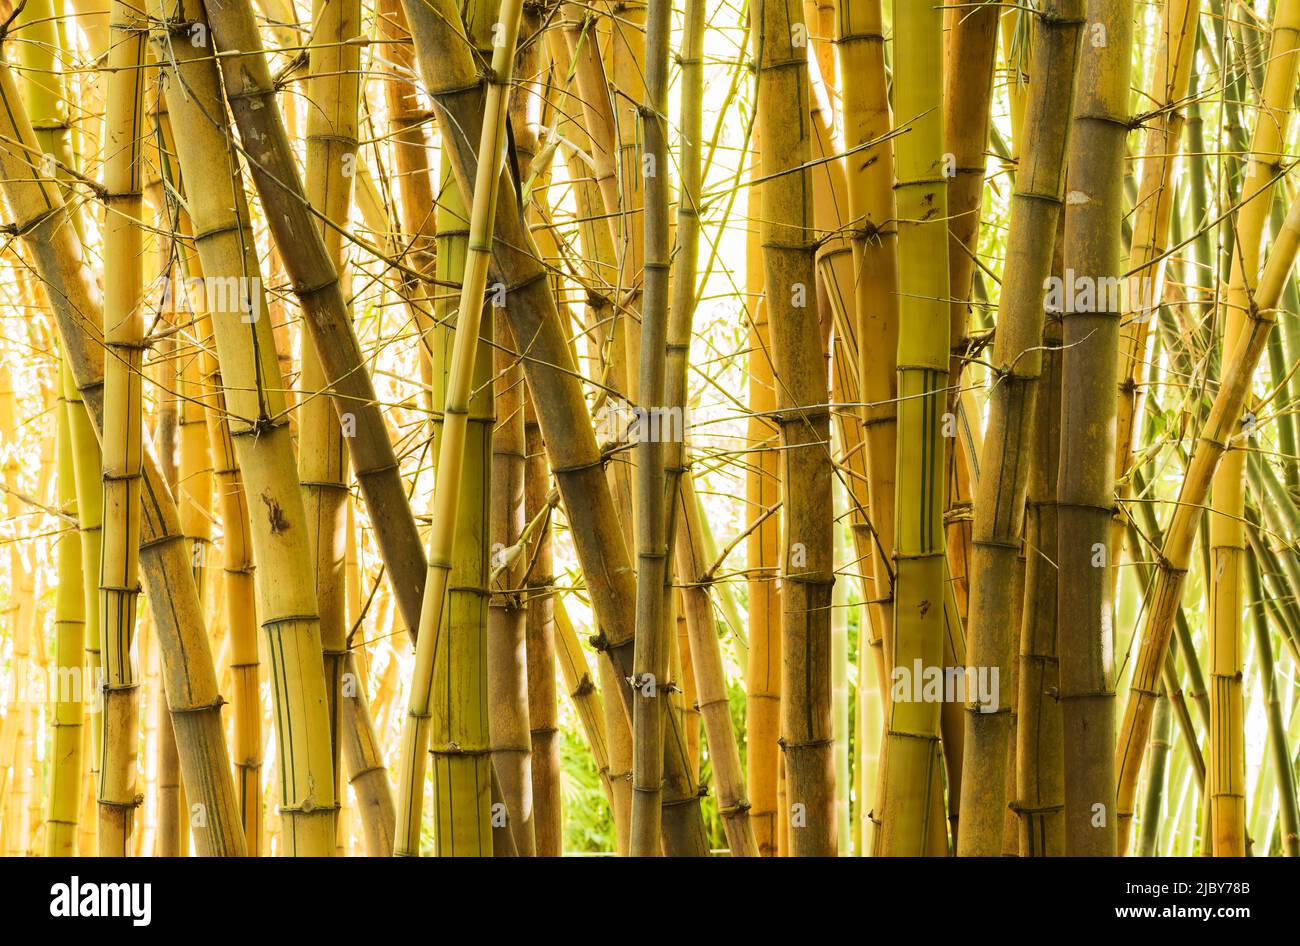 Gros plan sur des cannes en bambou géantes matures Banque D'Images